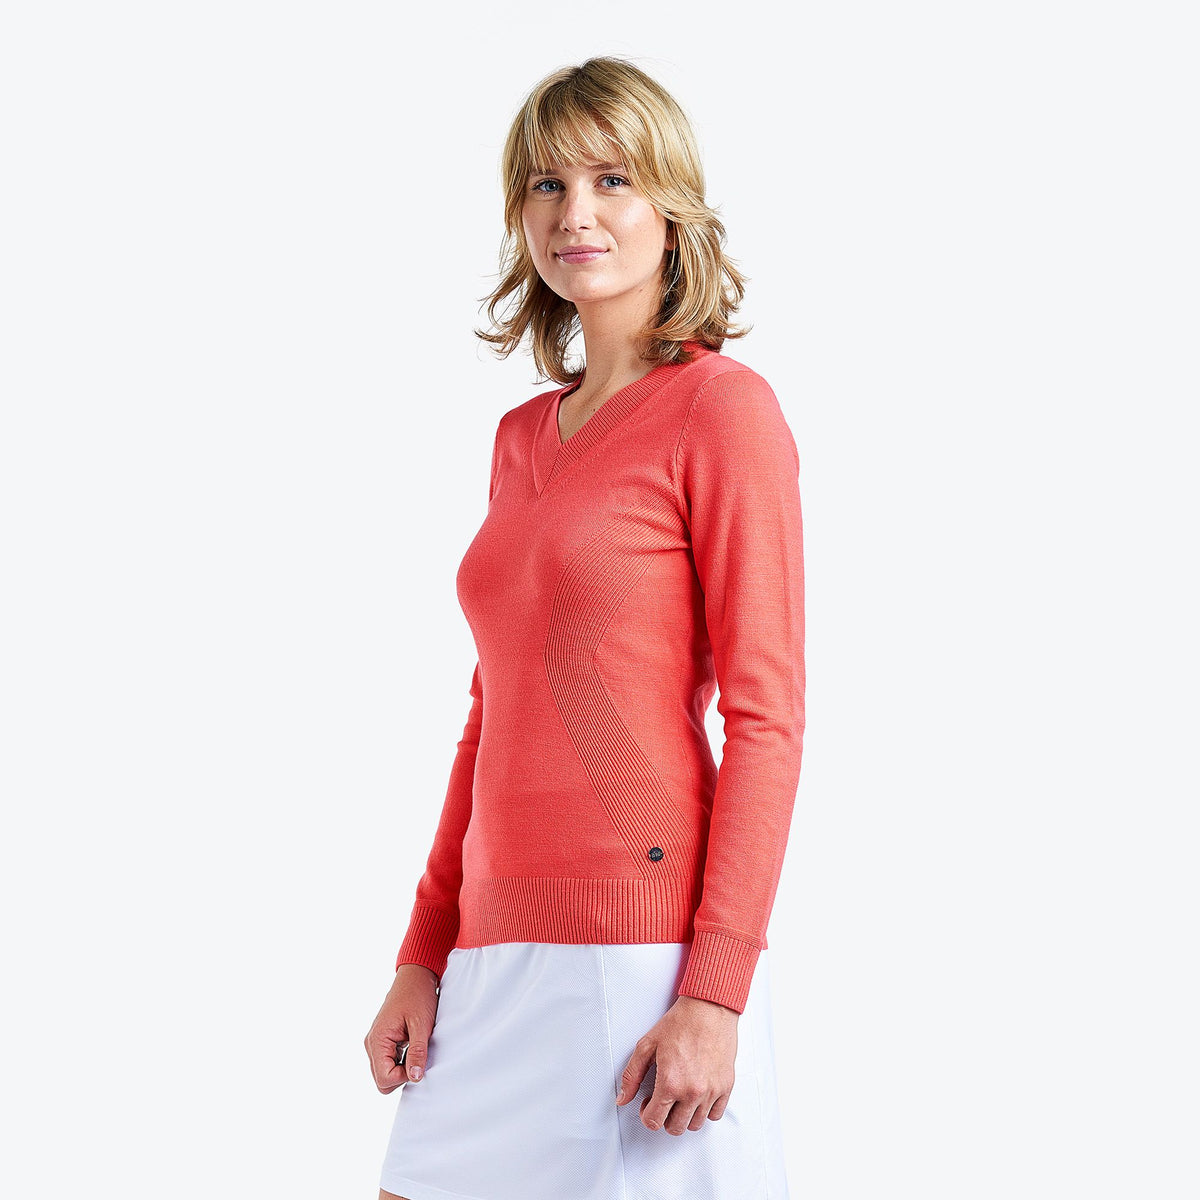 Nivo Sport All Womens Short Sleeve Golf Shirt (D-12435648327)